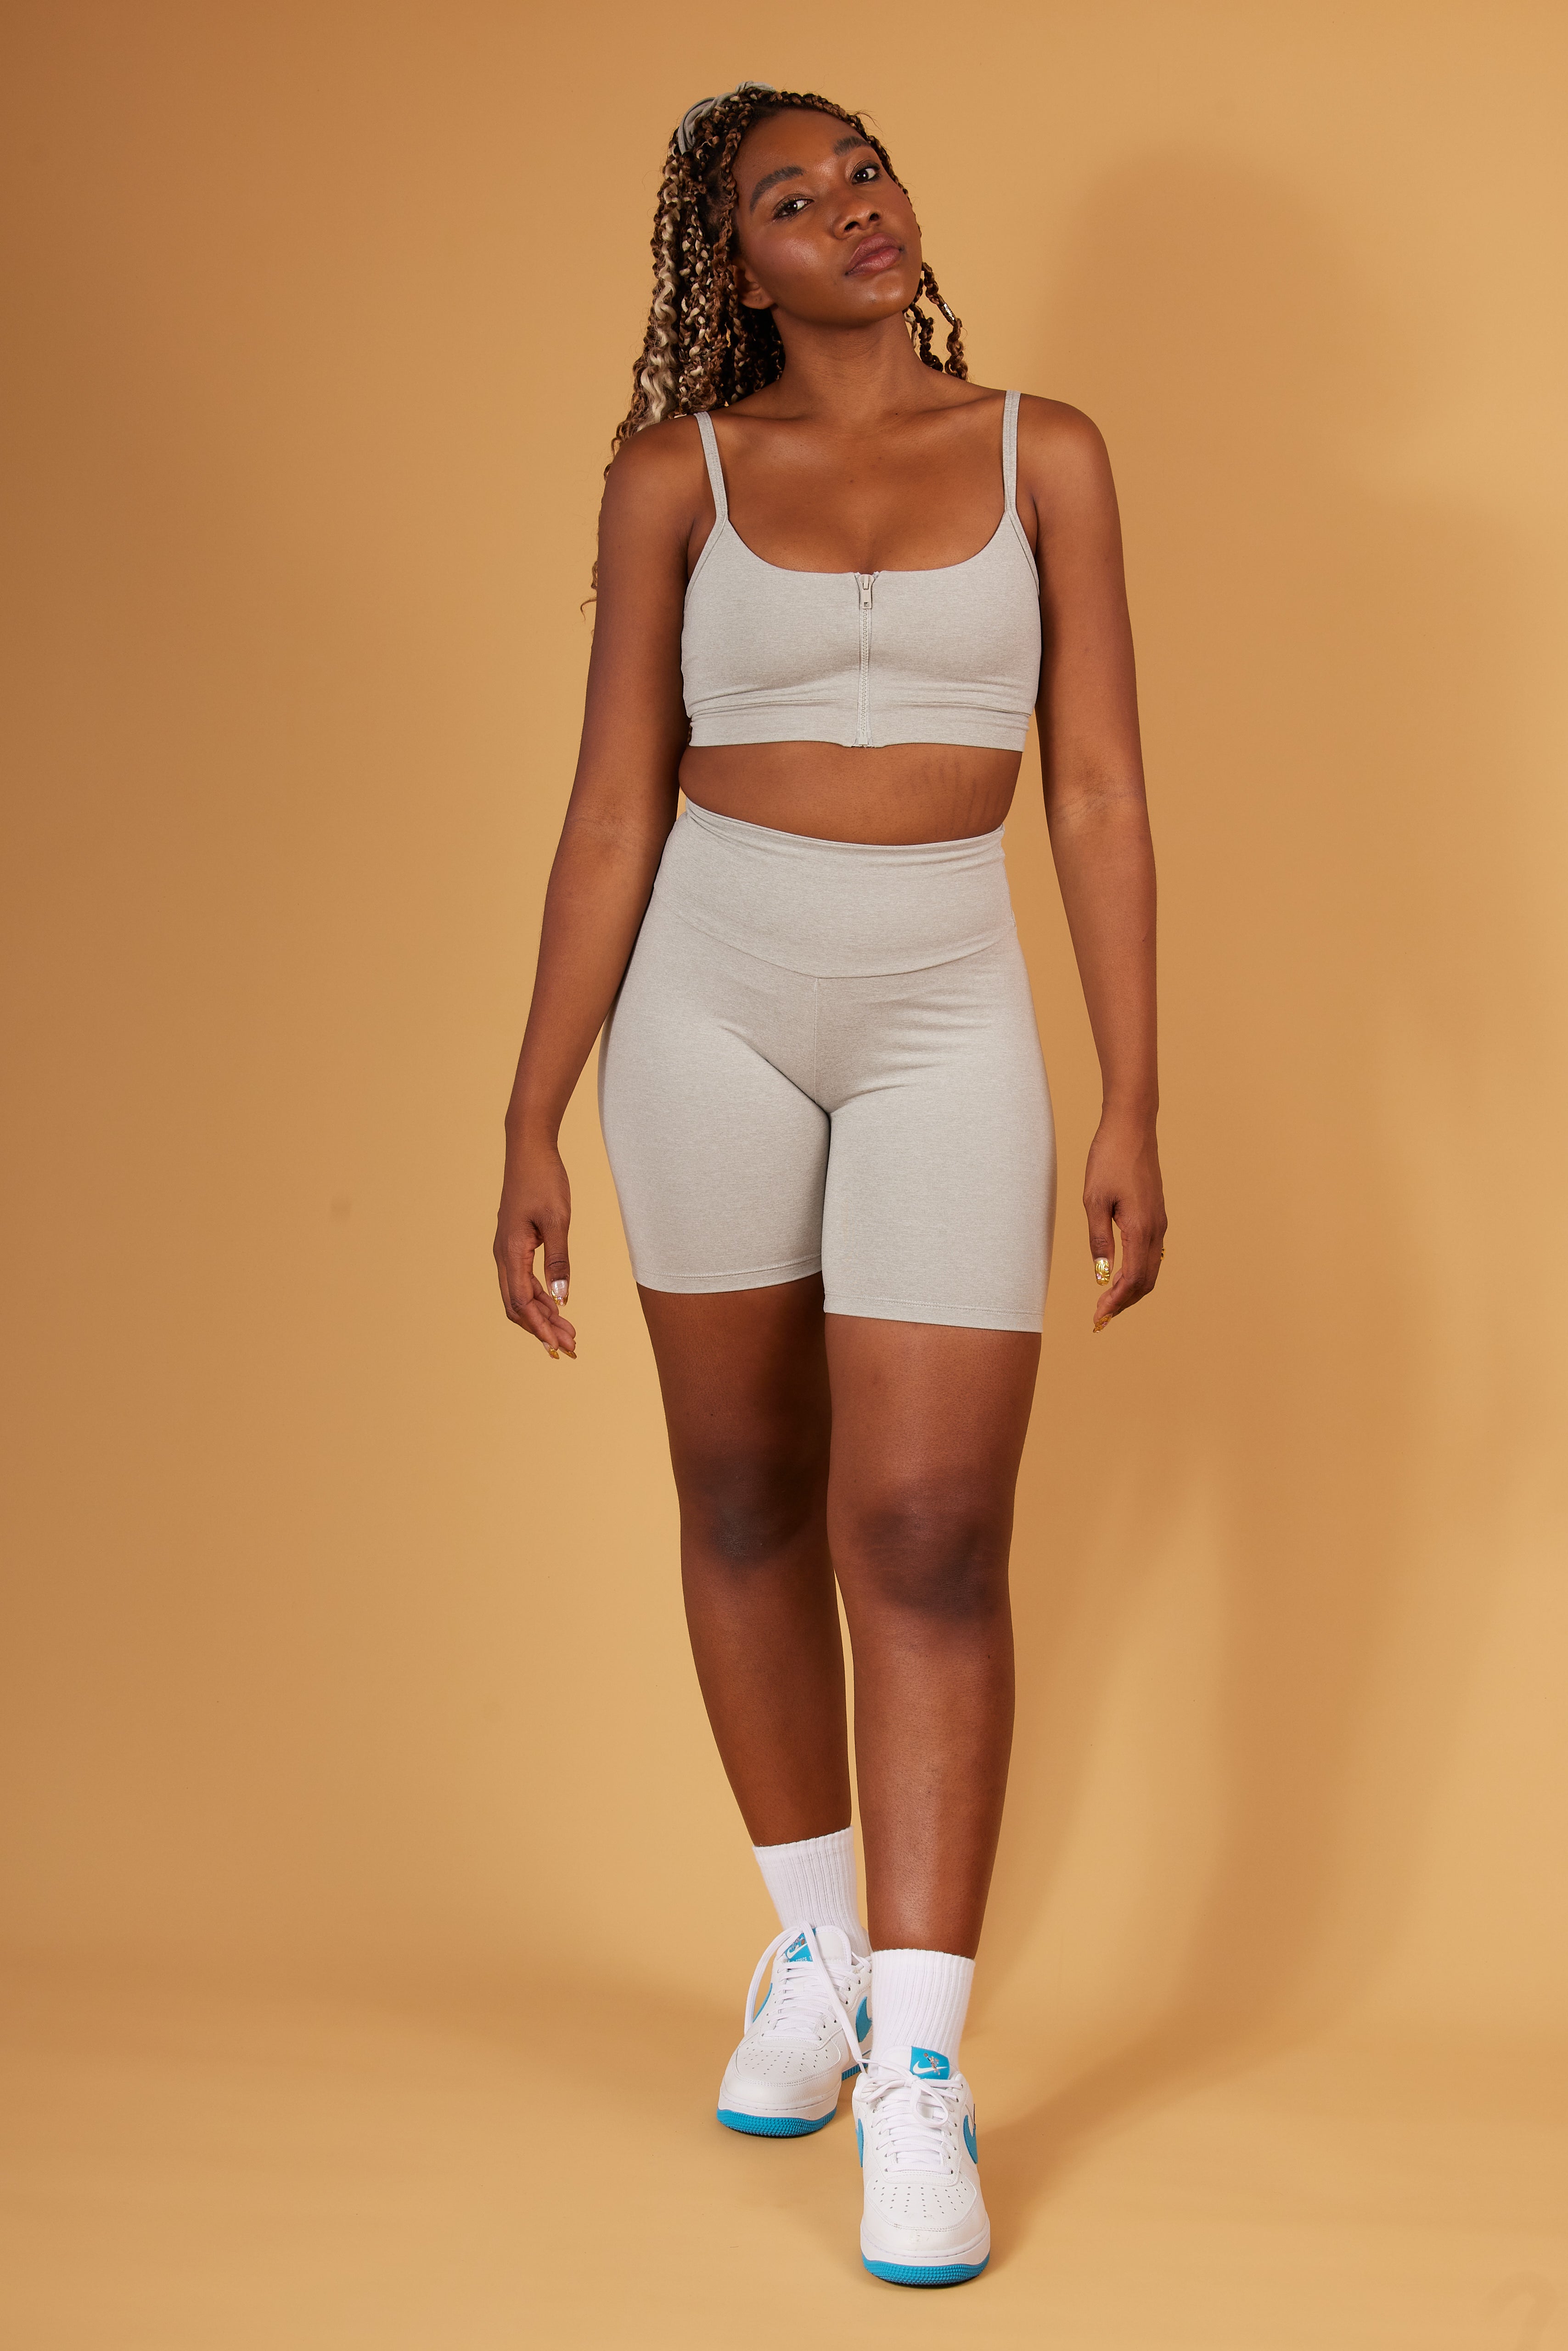 Ky New Design 2017 Women Custom Hooded Fitness Sports Bra Athletic